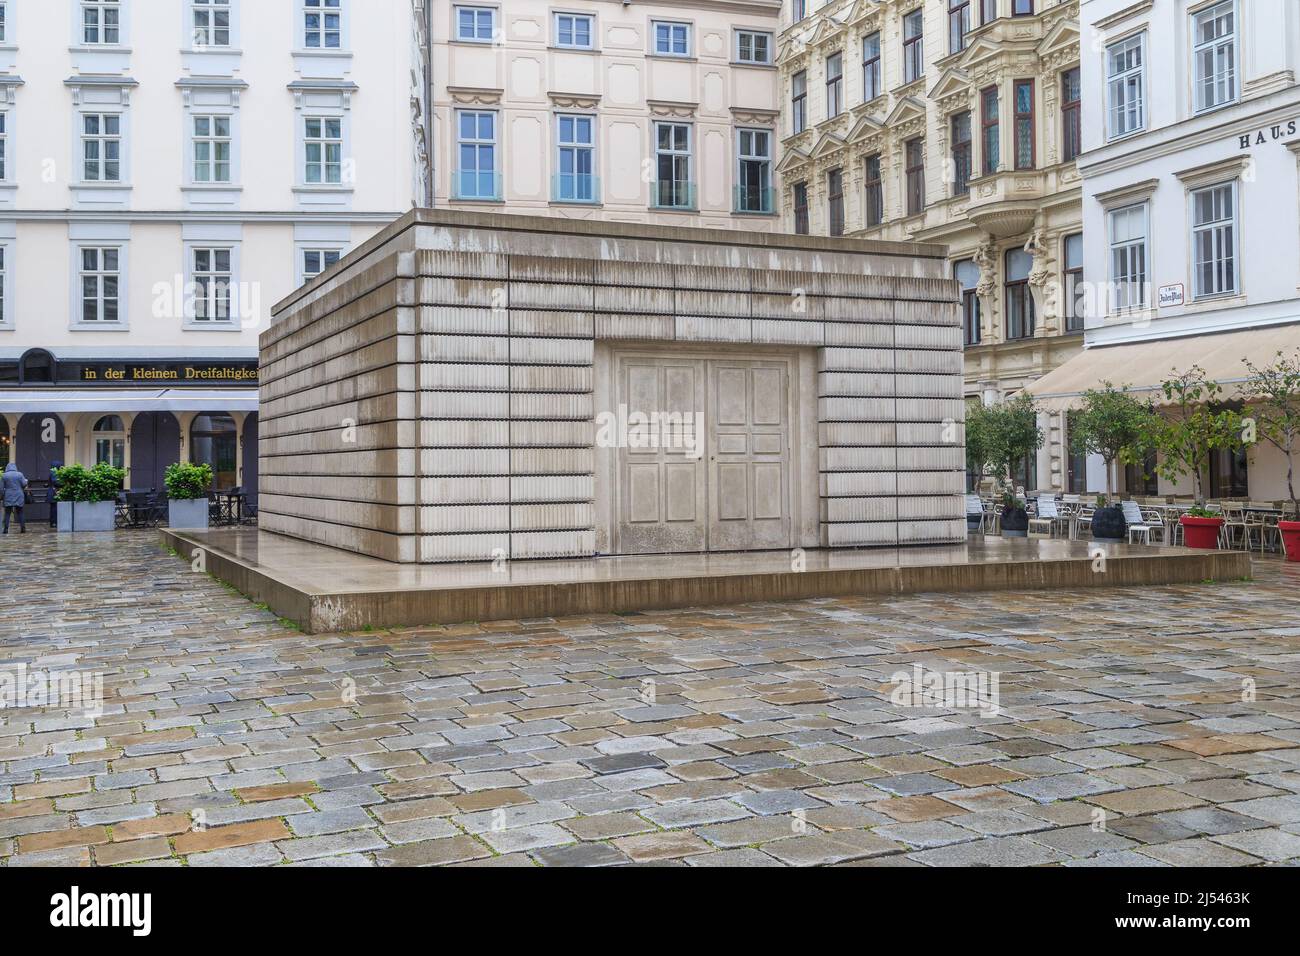 WIEN, ÖSTERREICH - 22. MAI 2019: Denkmal für die österreichischen jüdischen Opfer des Holocaust (Namenlose Bibliothek) auf dem Judenplatz. Stockfoto